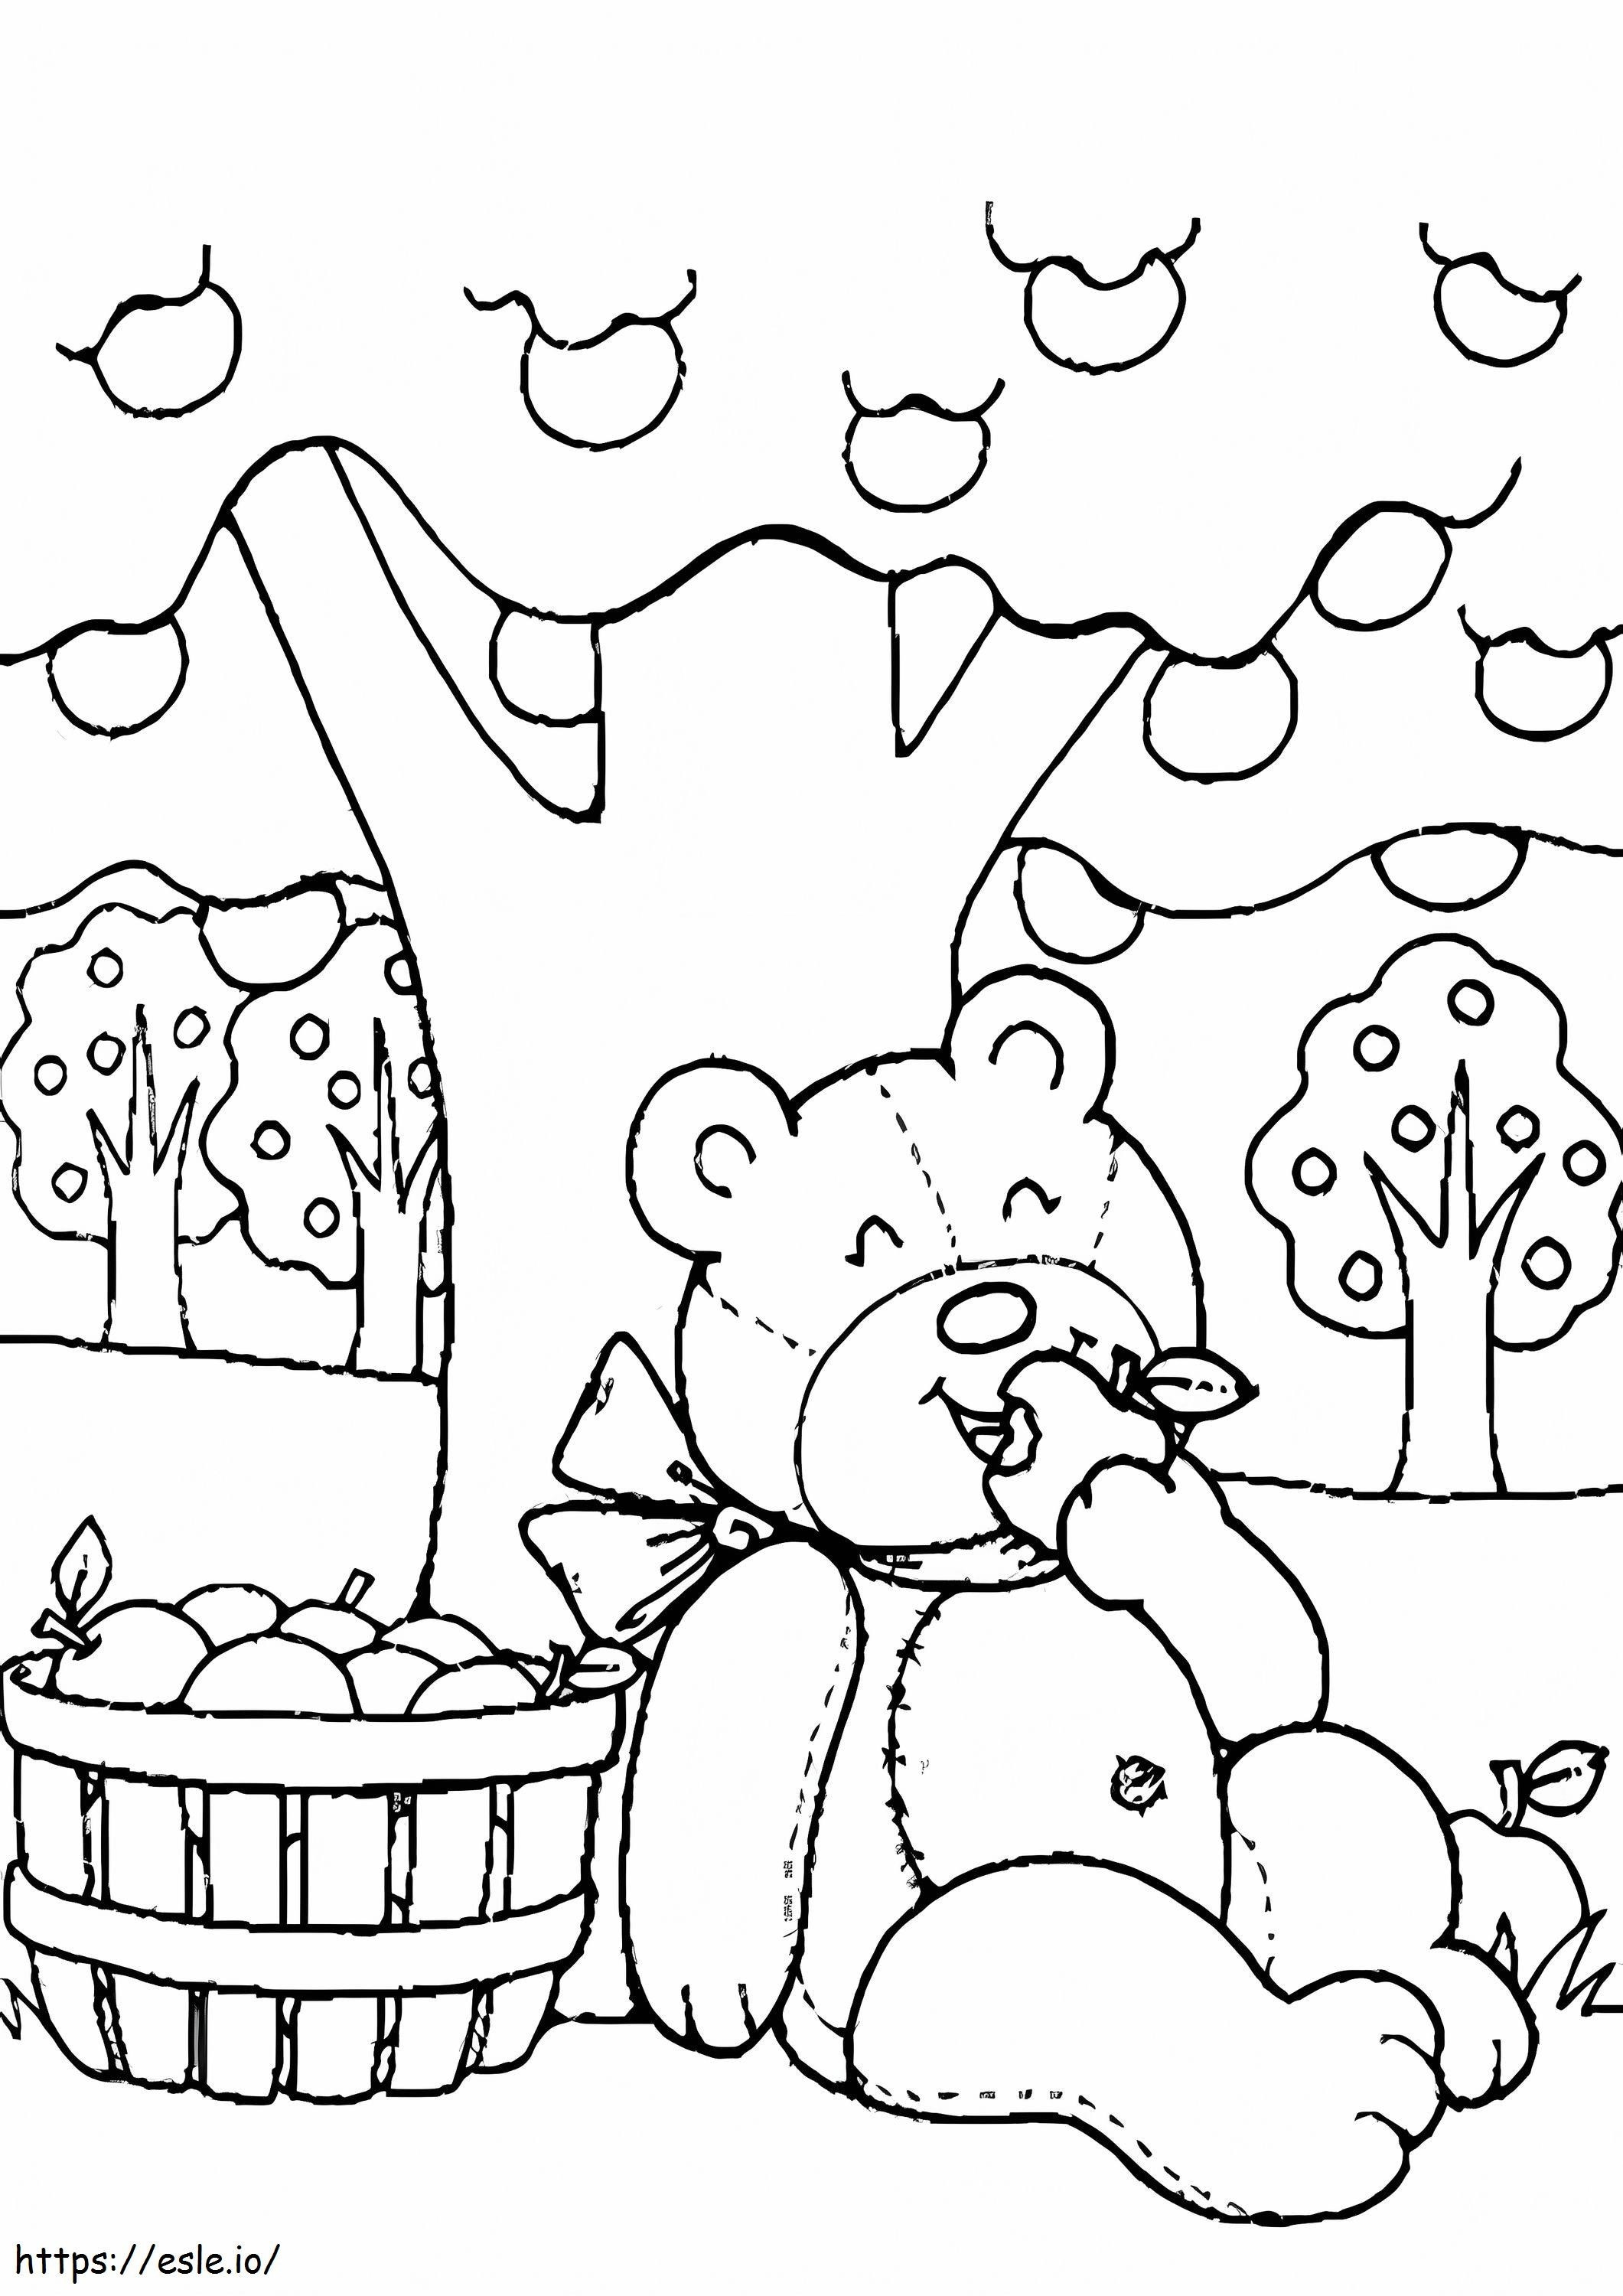 Urso de pelúcia comendo maçãs com macieira para colorir